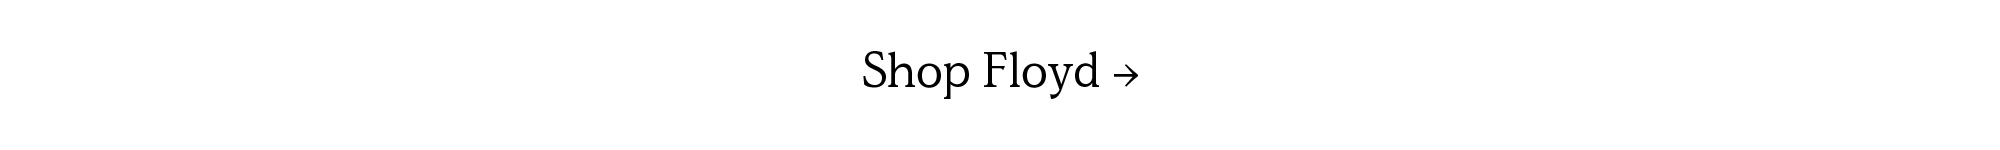 Shop All Floyd